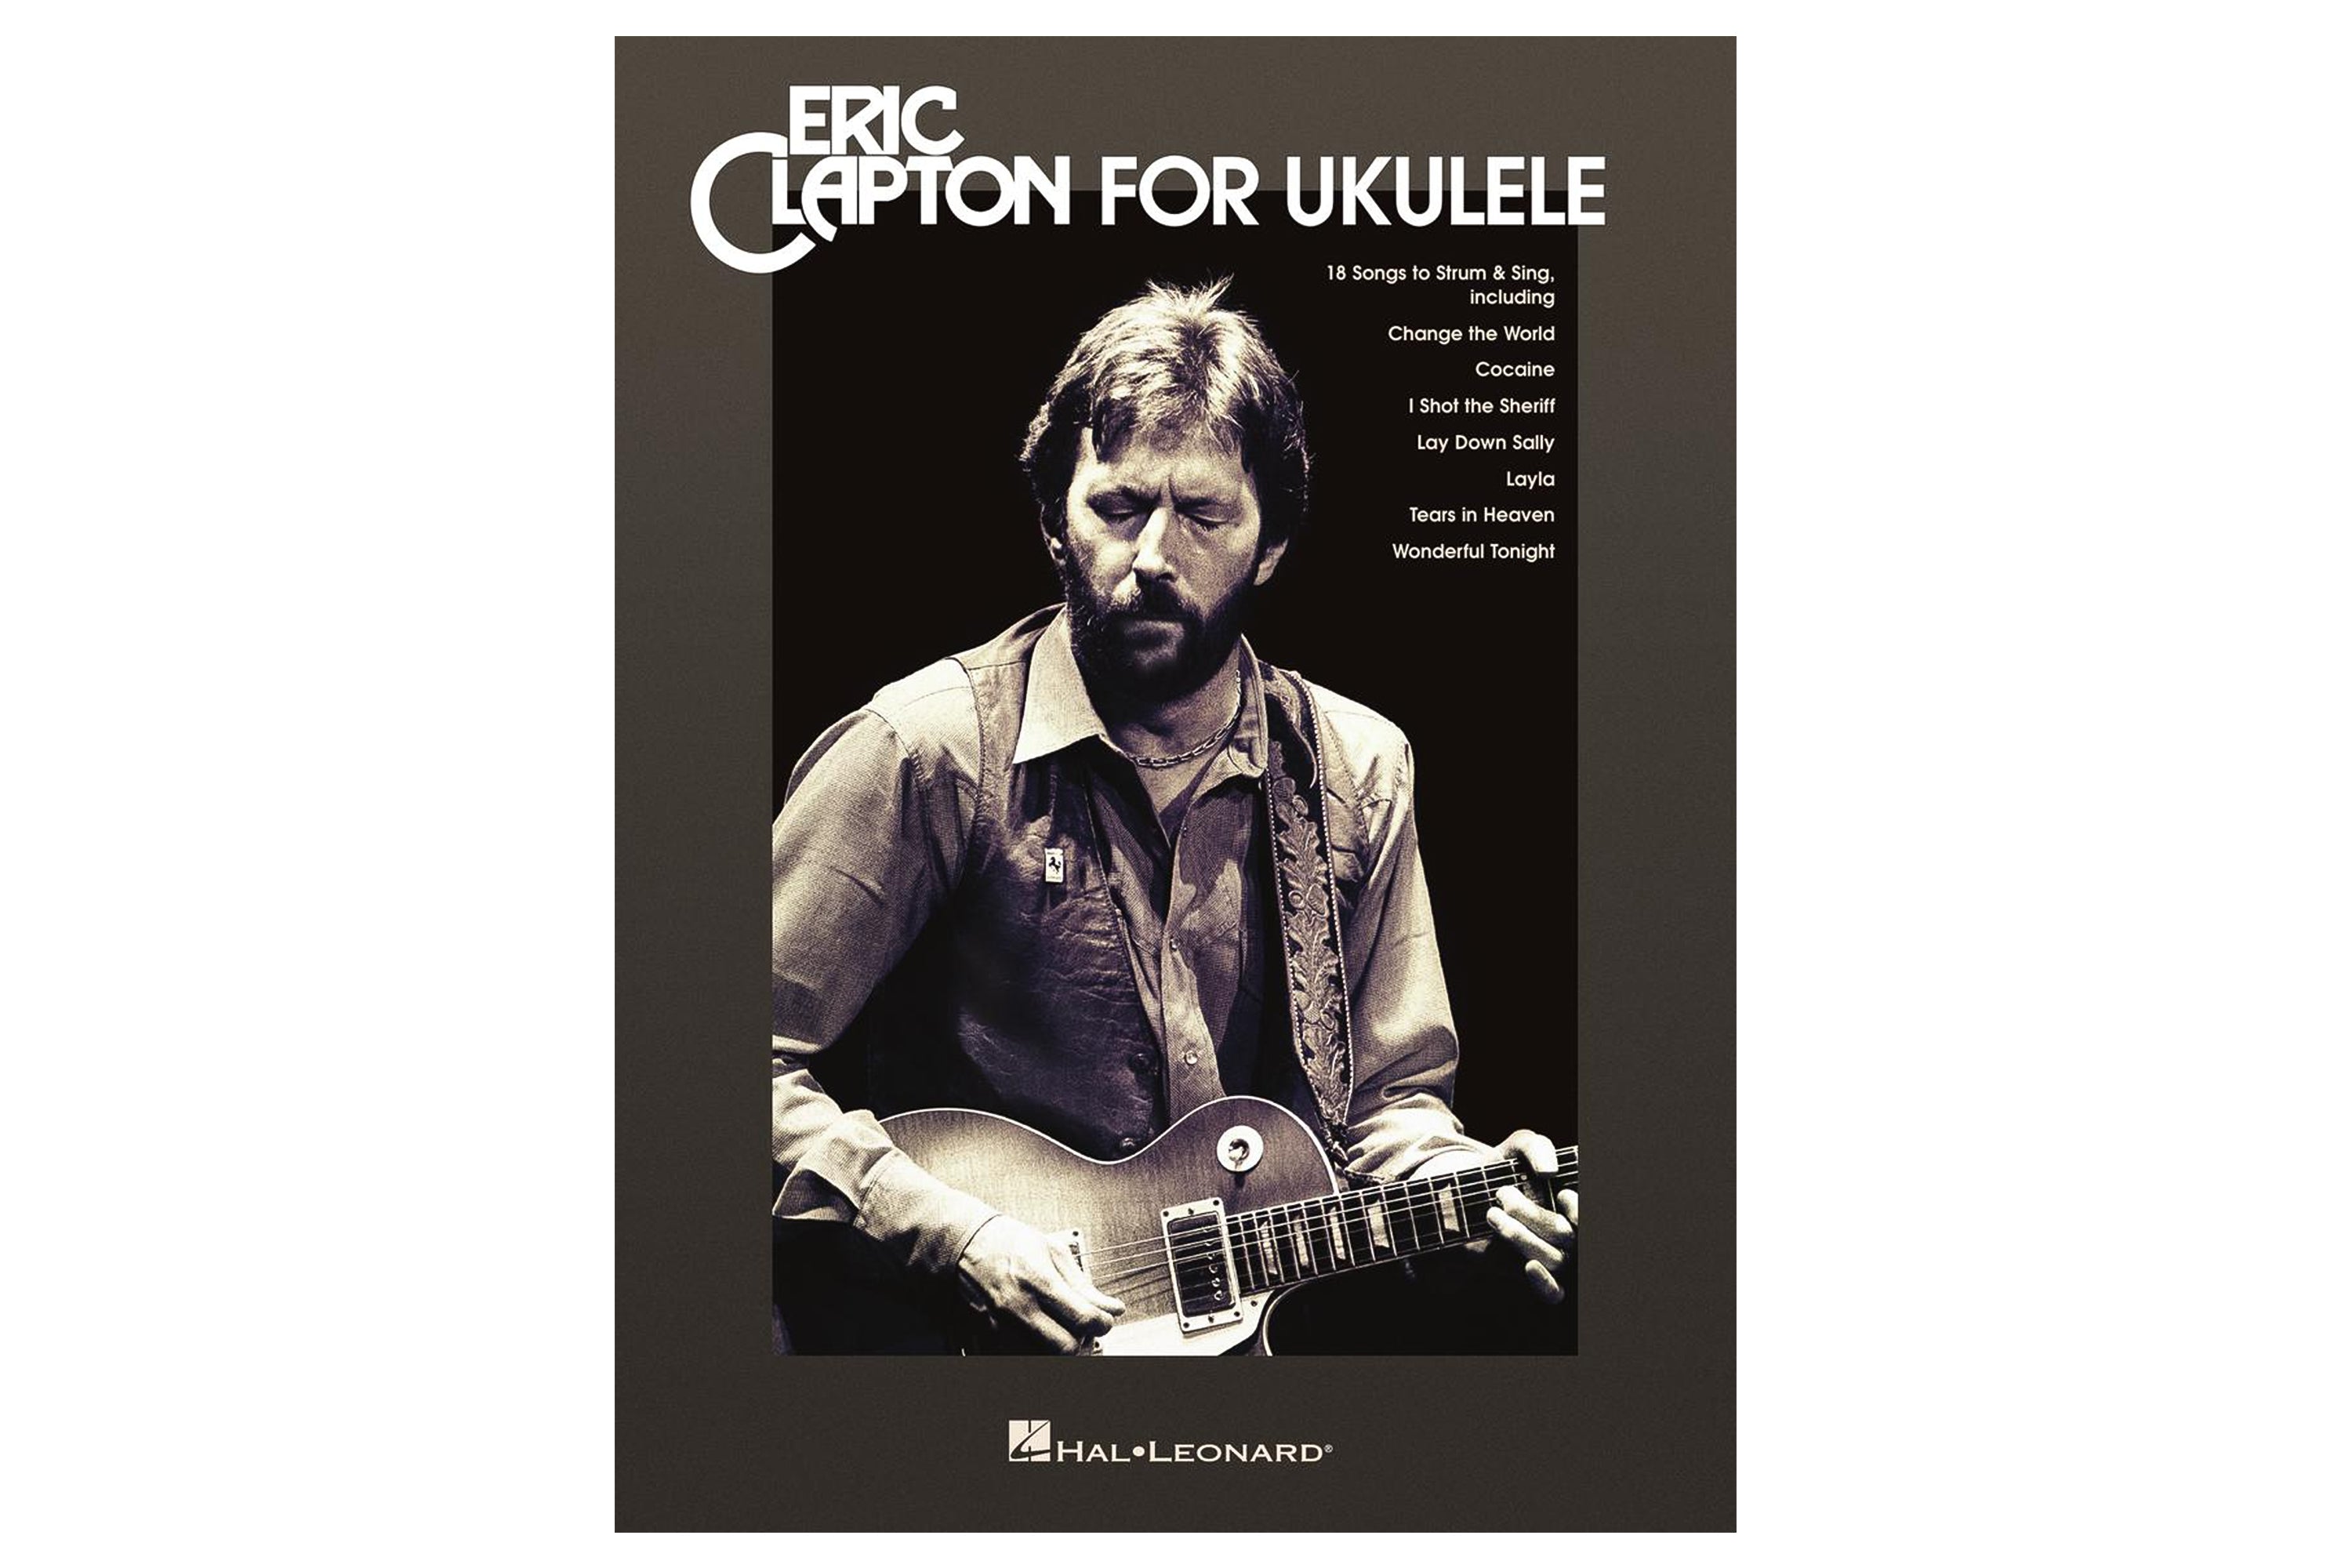 Eric Clapton for Ukulele